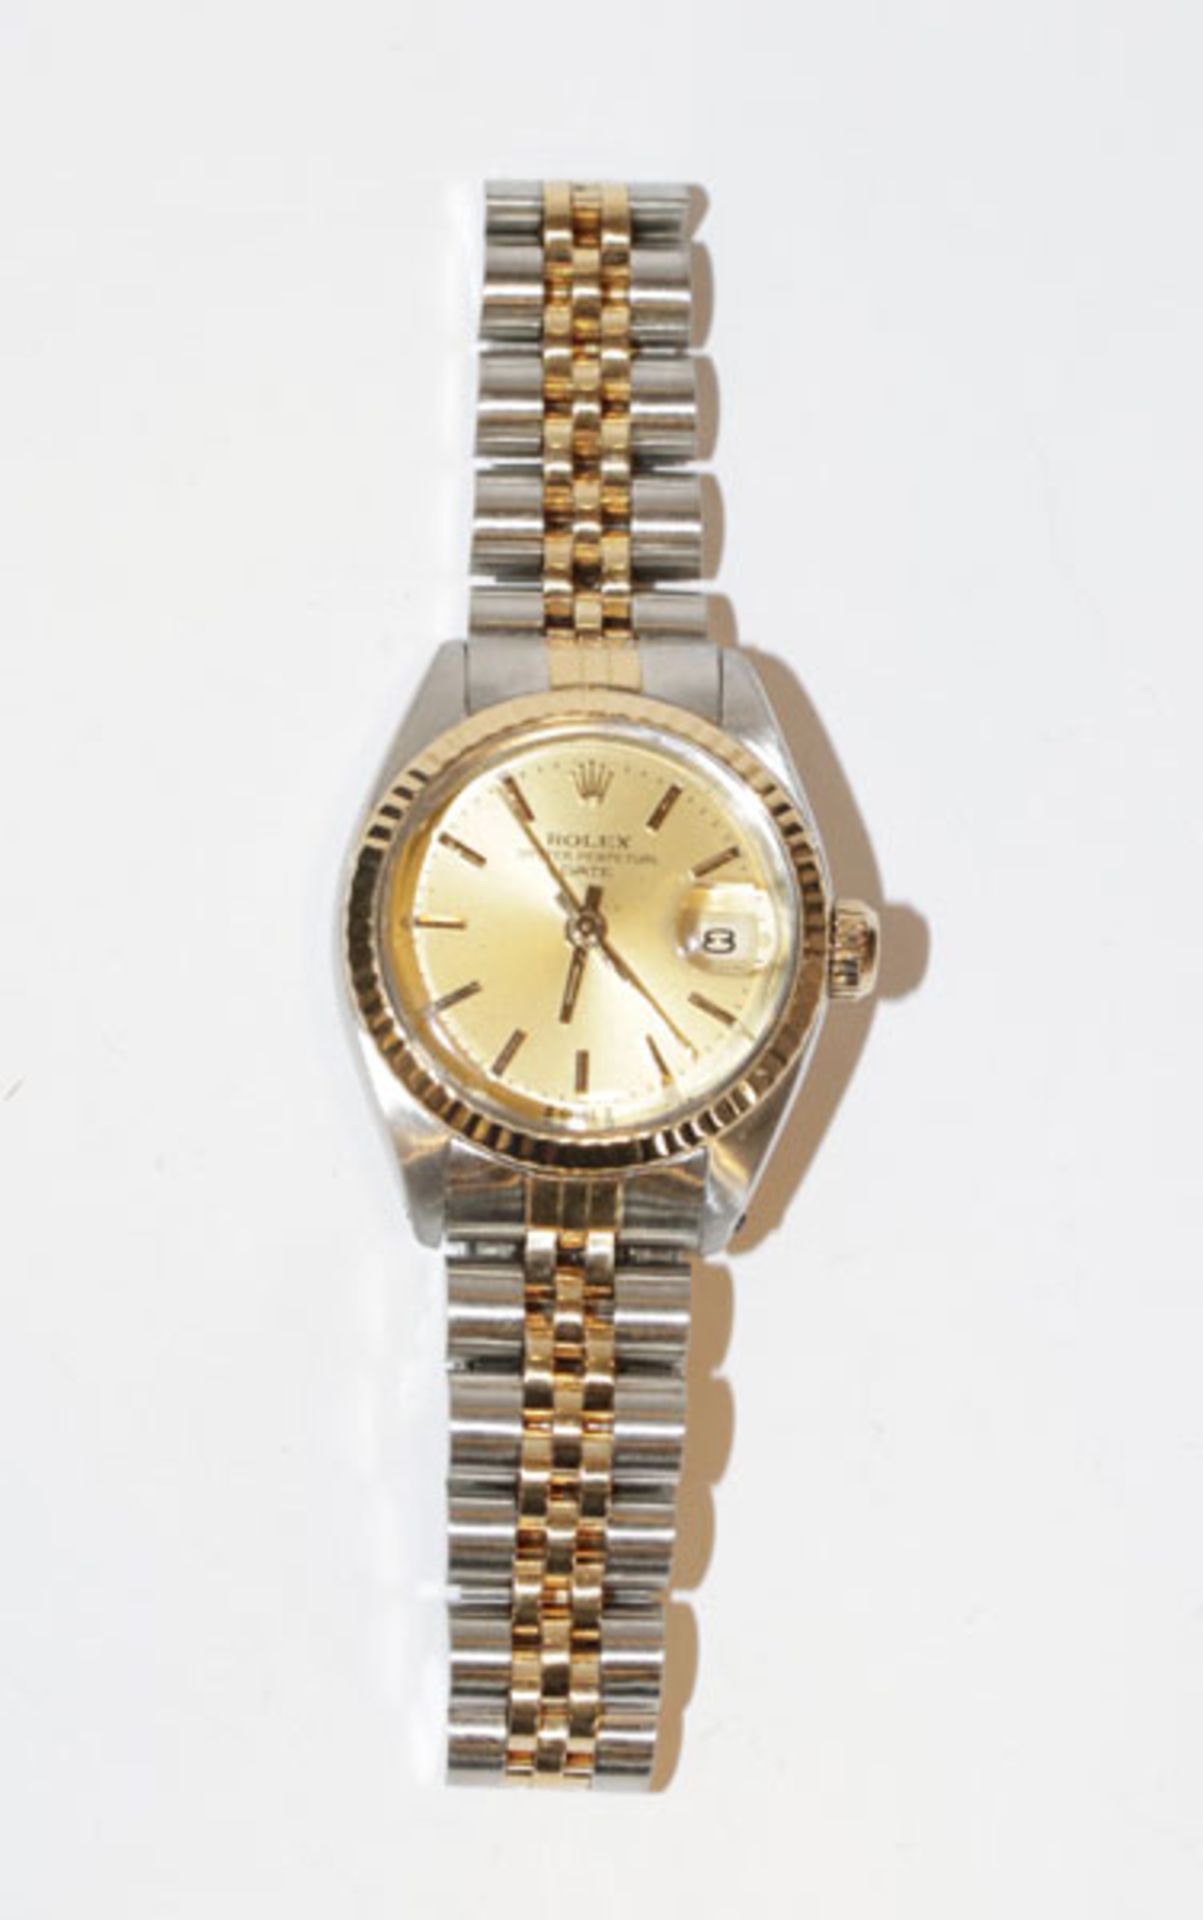 Rolex Oyster Perpetual Date Armbanduhr, Stahl/18 k Gelbgold, mit Papiere, intakt, guter Zustand, in 